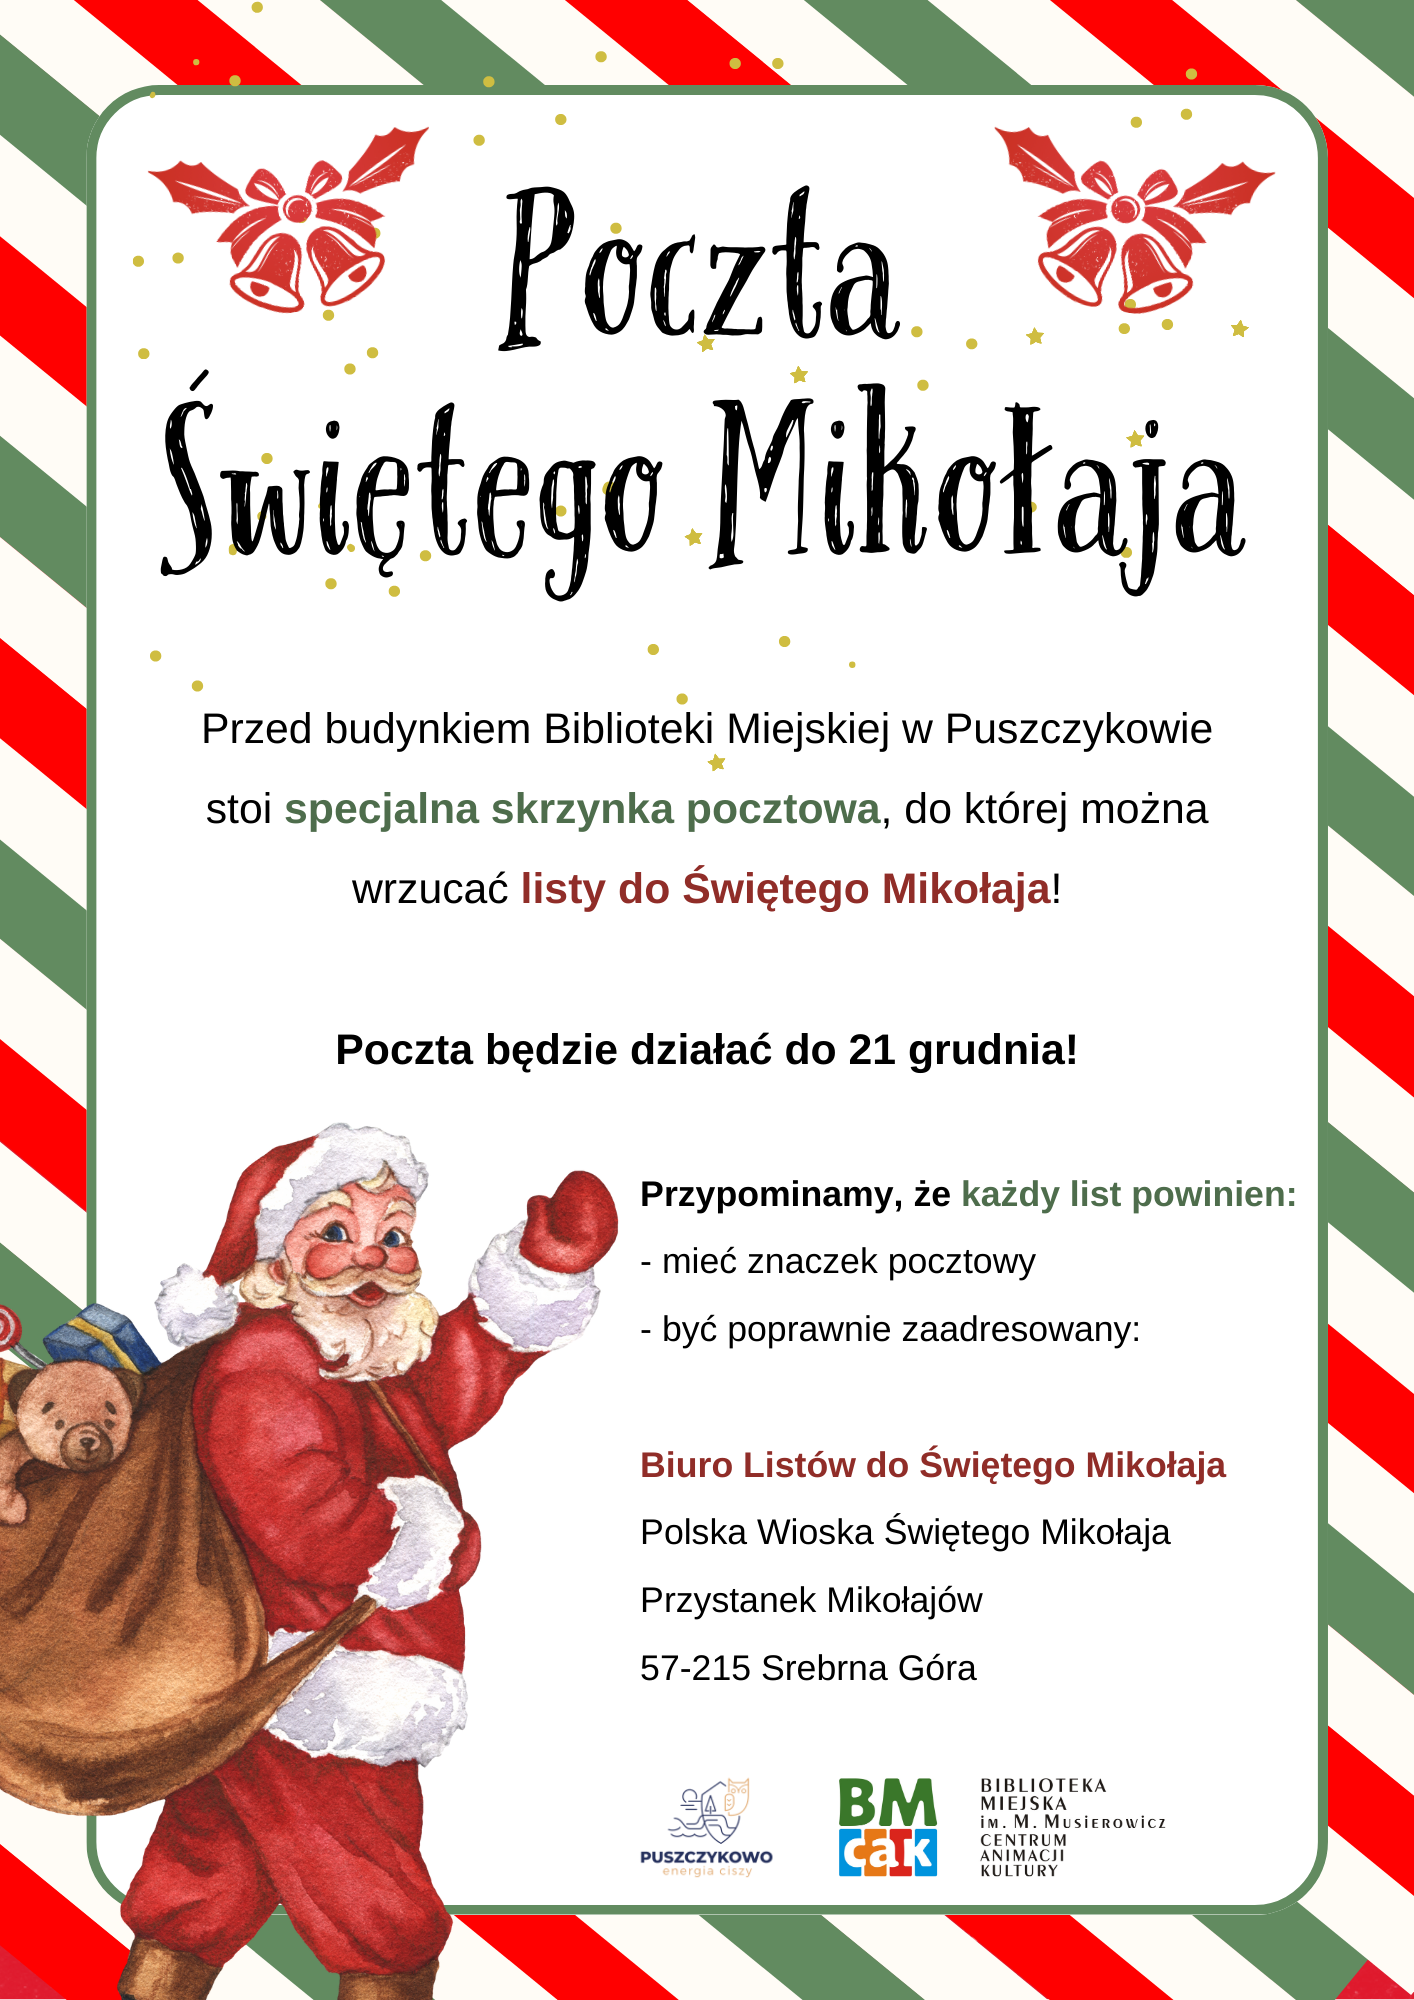 Przed budynkiem Biblioteki Miejskiej w Puszczykowie czeka na Was skrzynka pocztowa, gotowa przyjąć listy do samego Świętego Mikołaja!